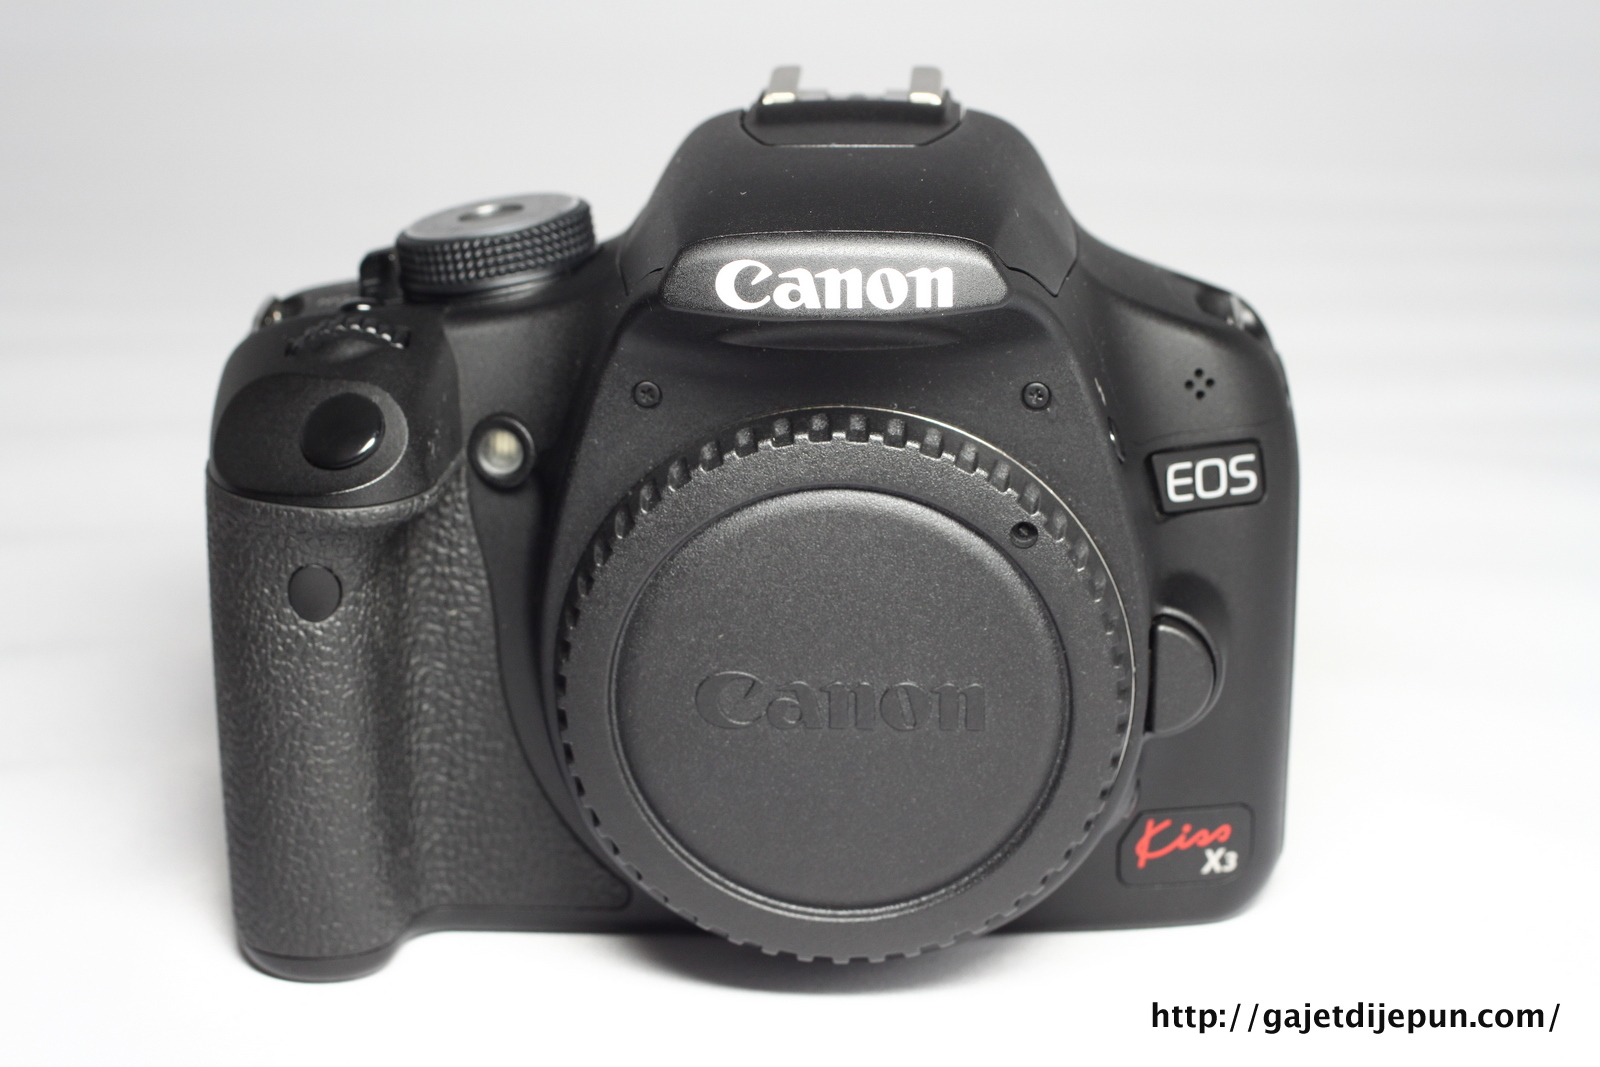 gajetdijepun-acs: [SOLD] Canon EOS Kiss X3 (500D) [a348]